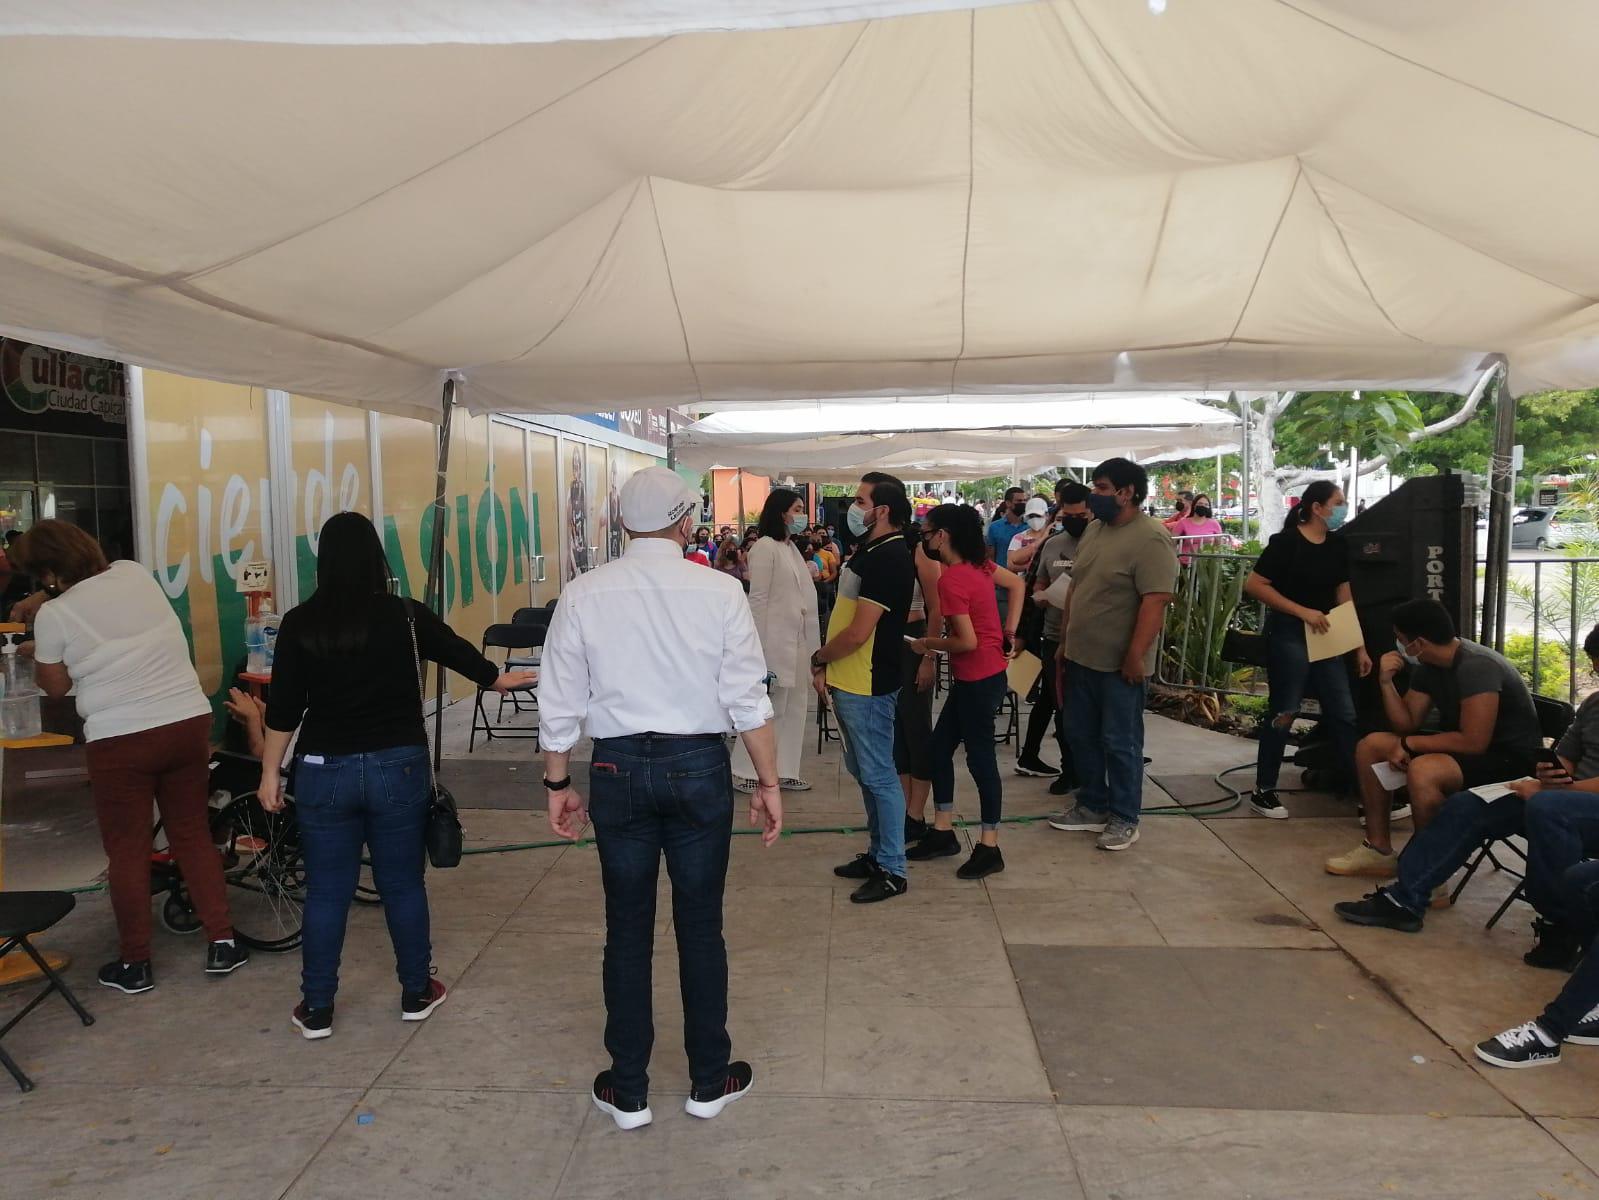 $!Transcurre tranquilo segundo día de vacunación en el Polideportivo Juan S. Millán, de Culiacán